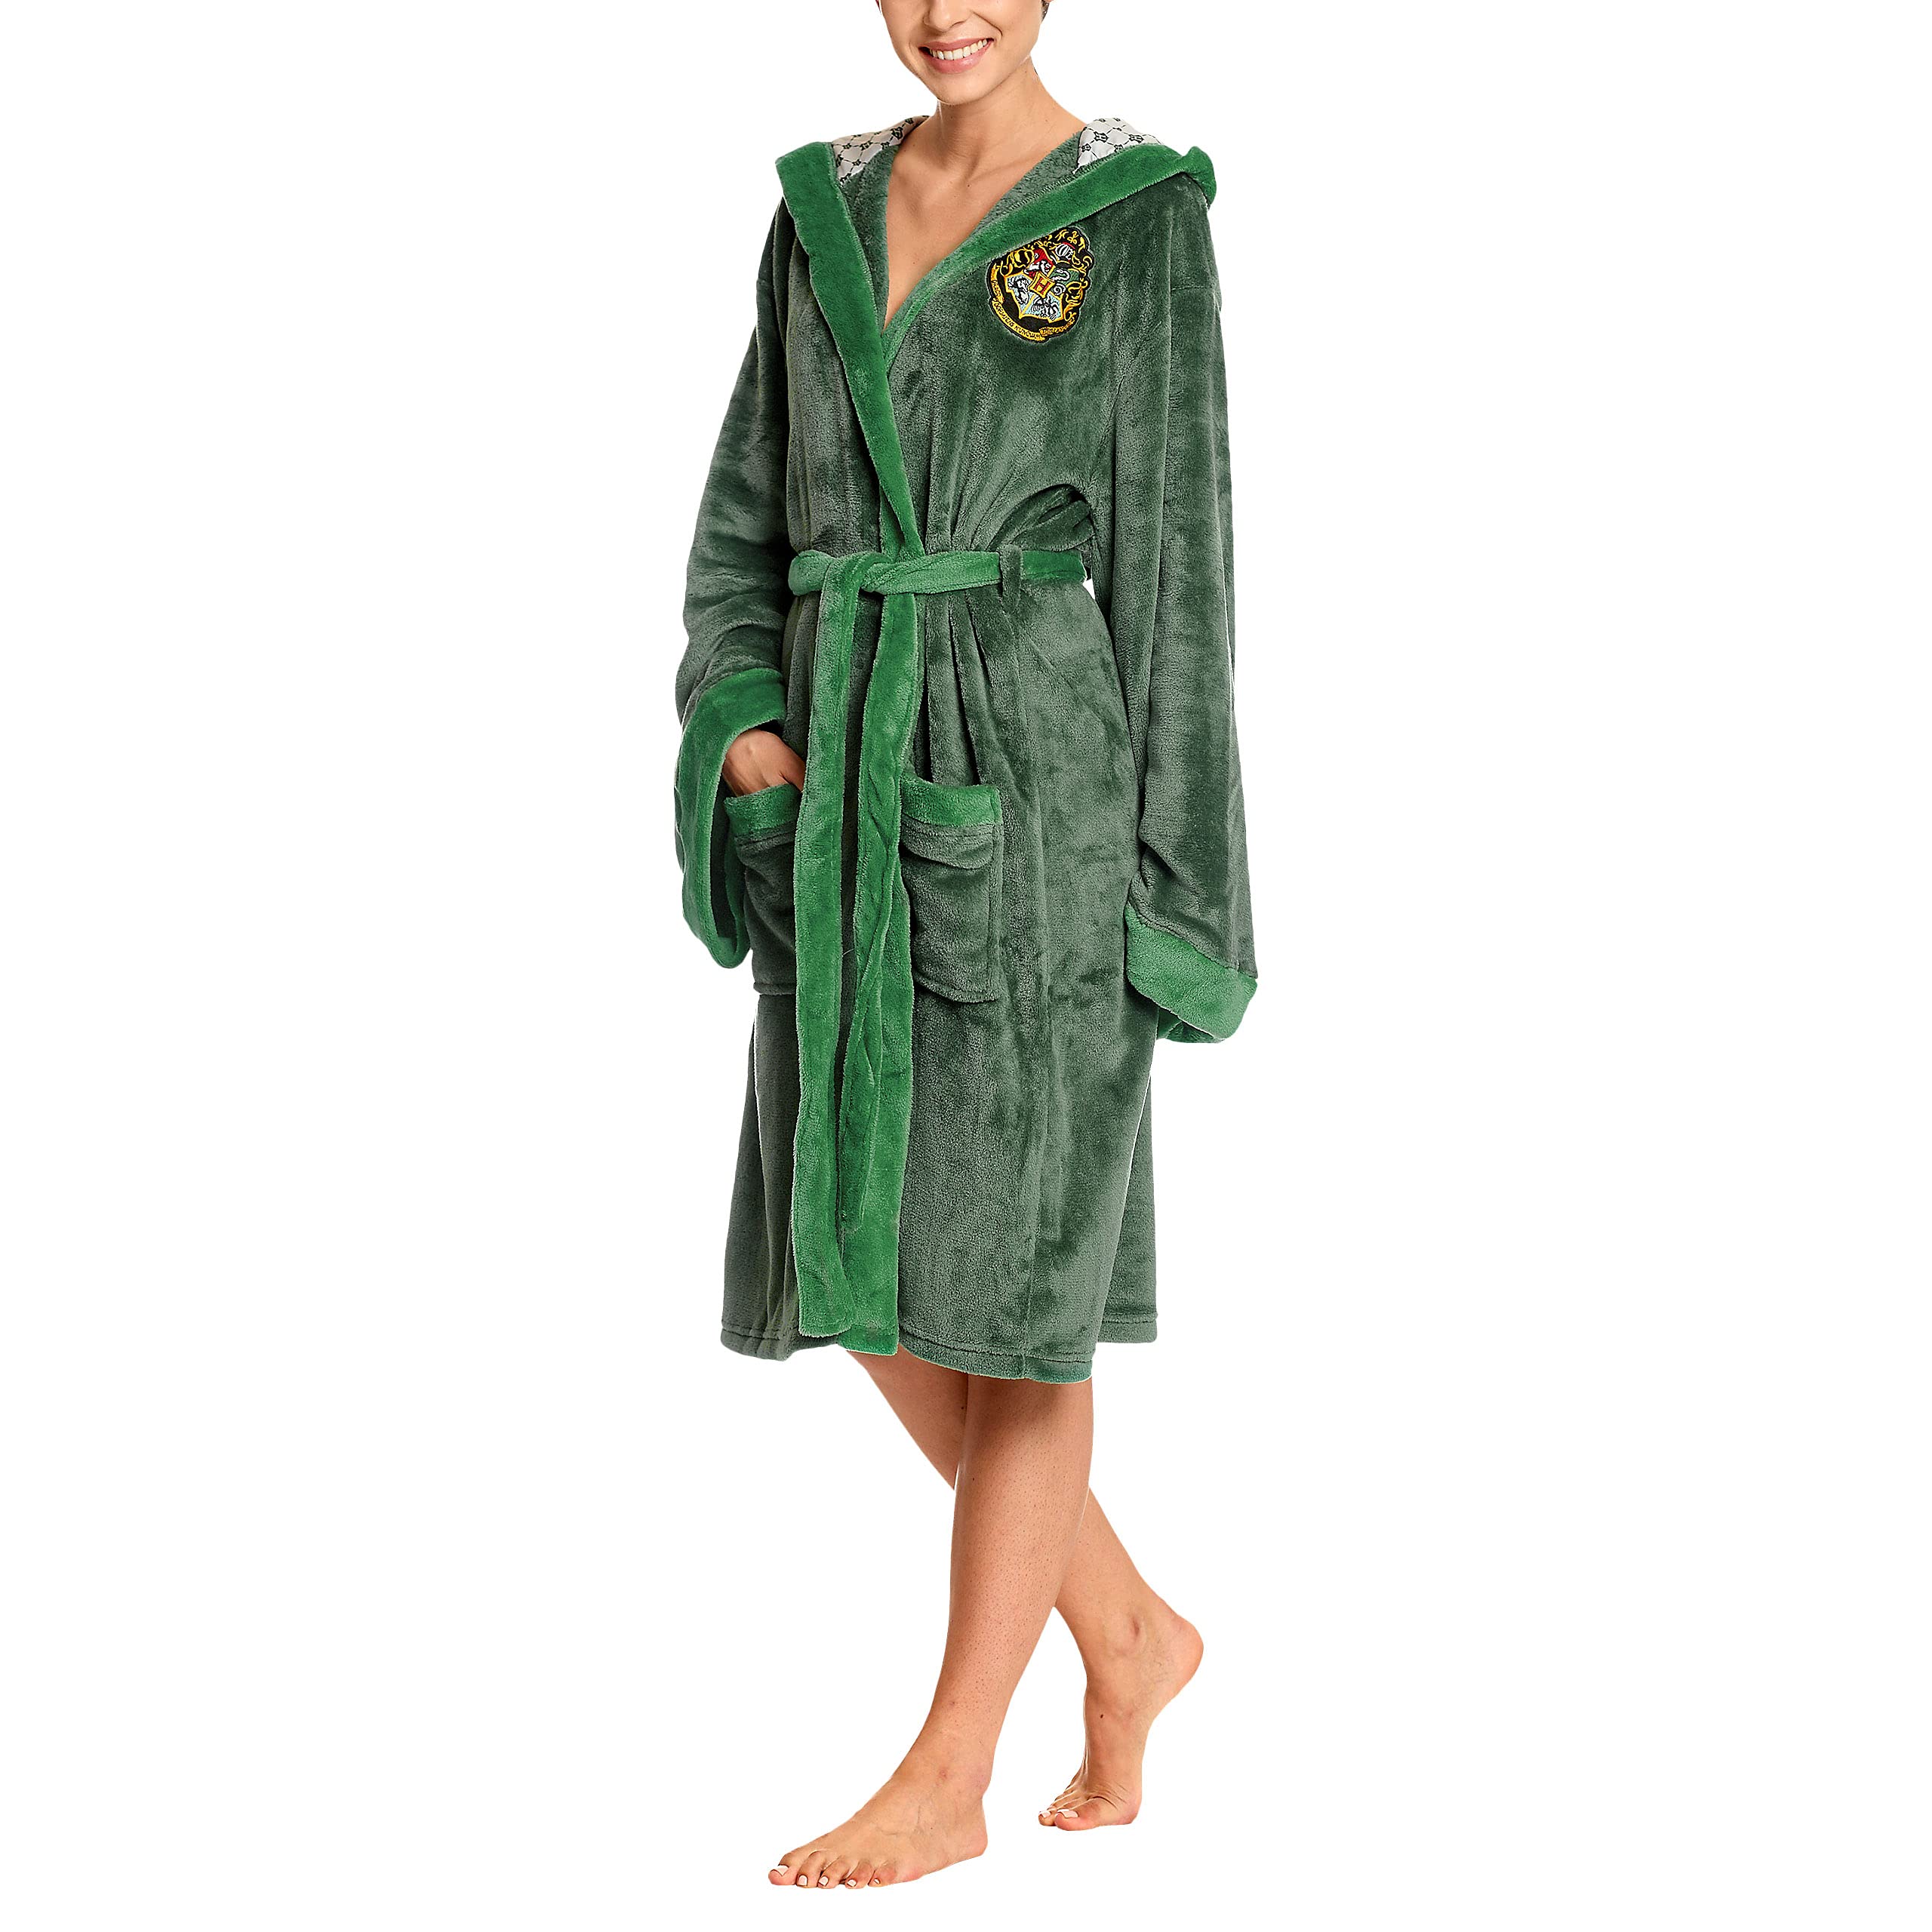 Elbenwald Harry Potter Bademantel mit Kapuze mit großem Slytherin Wappen auf dem Rücken und aufgesetzten Taschen für Damen und Herren grün 110 cm